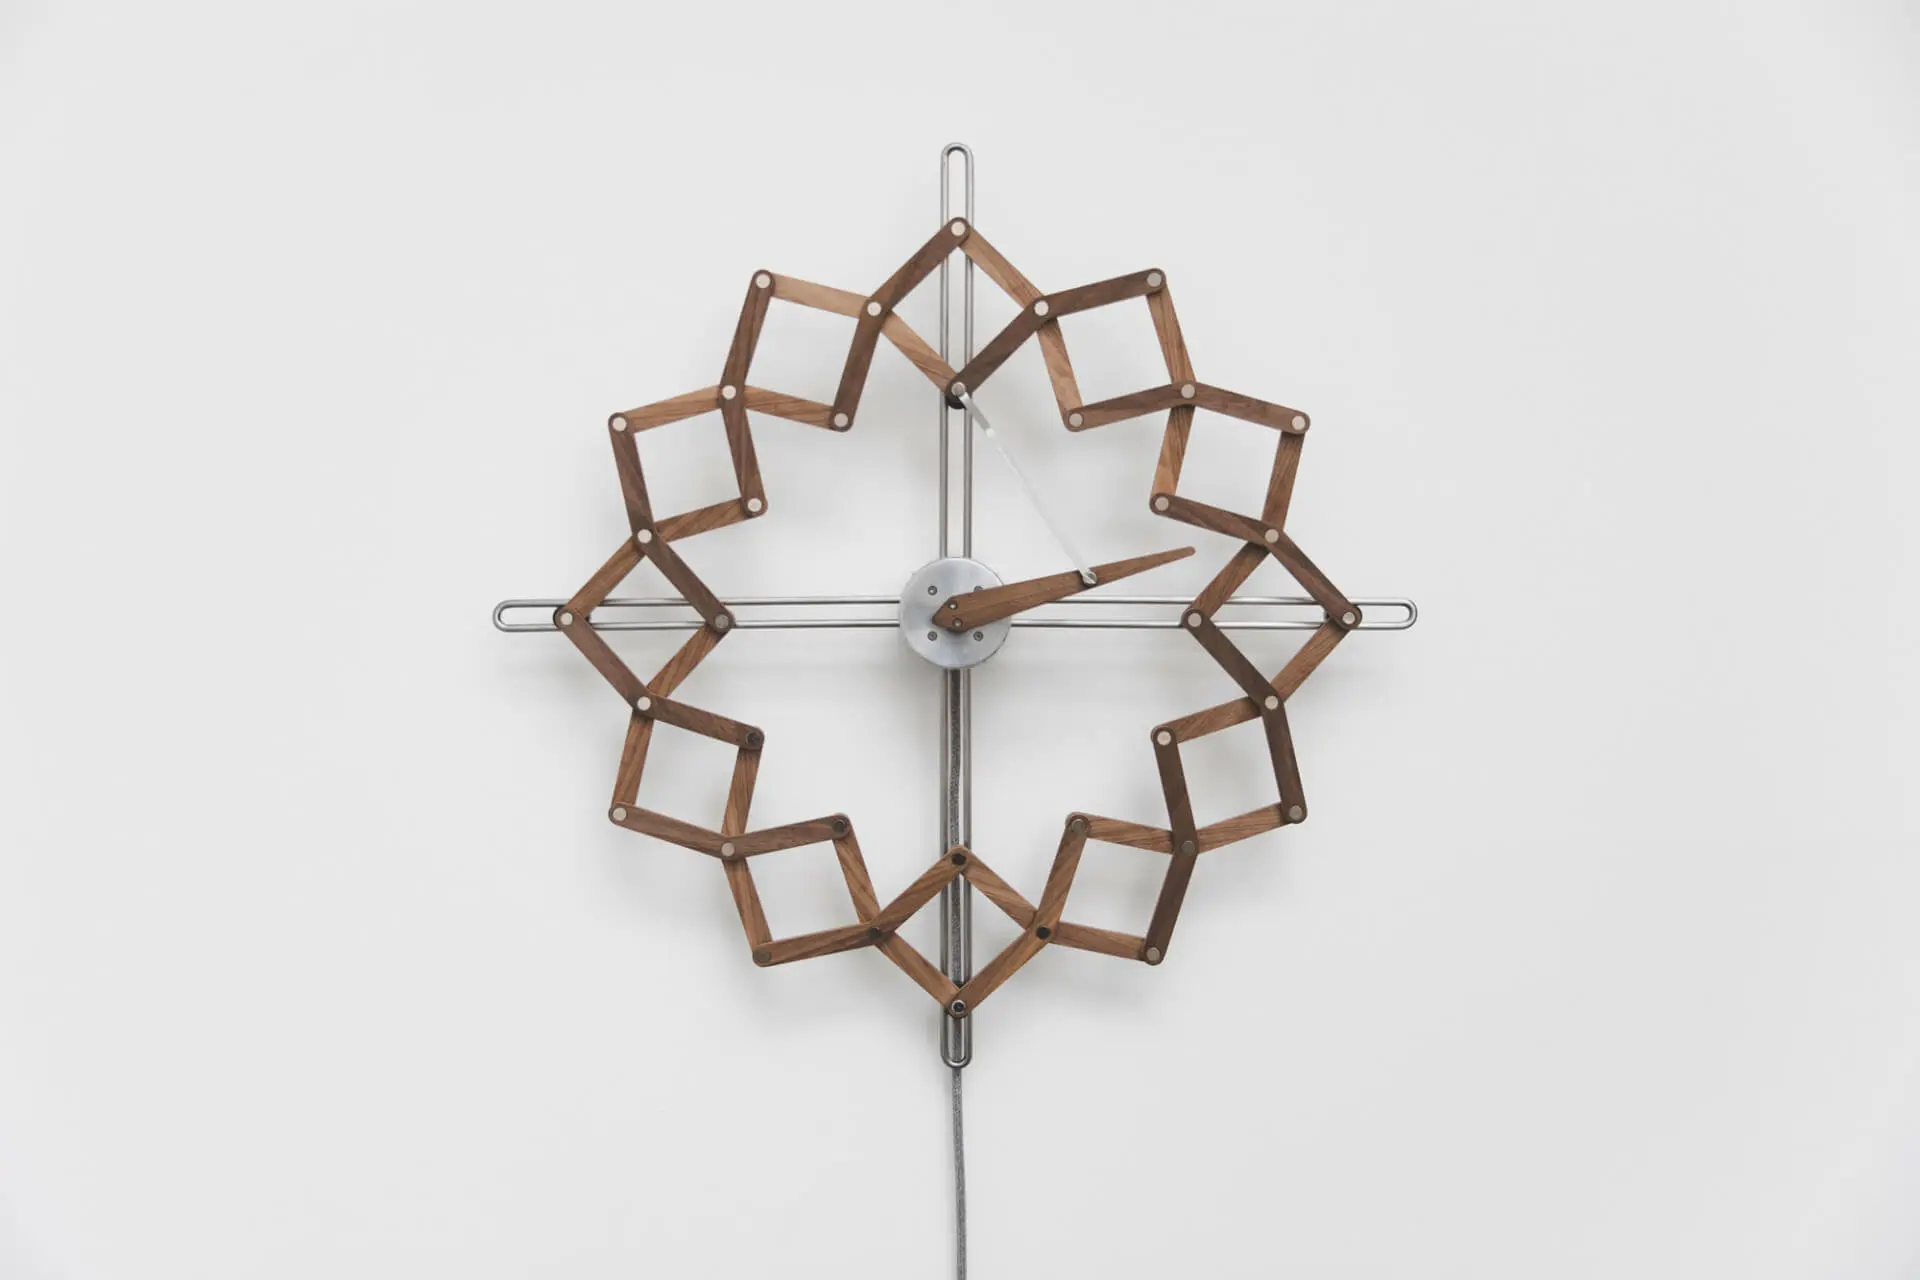 Design clocks: Solstice by Matt Gilbert